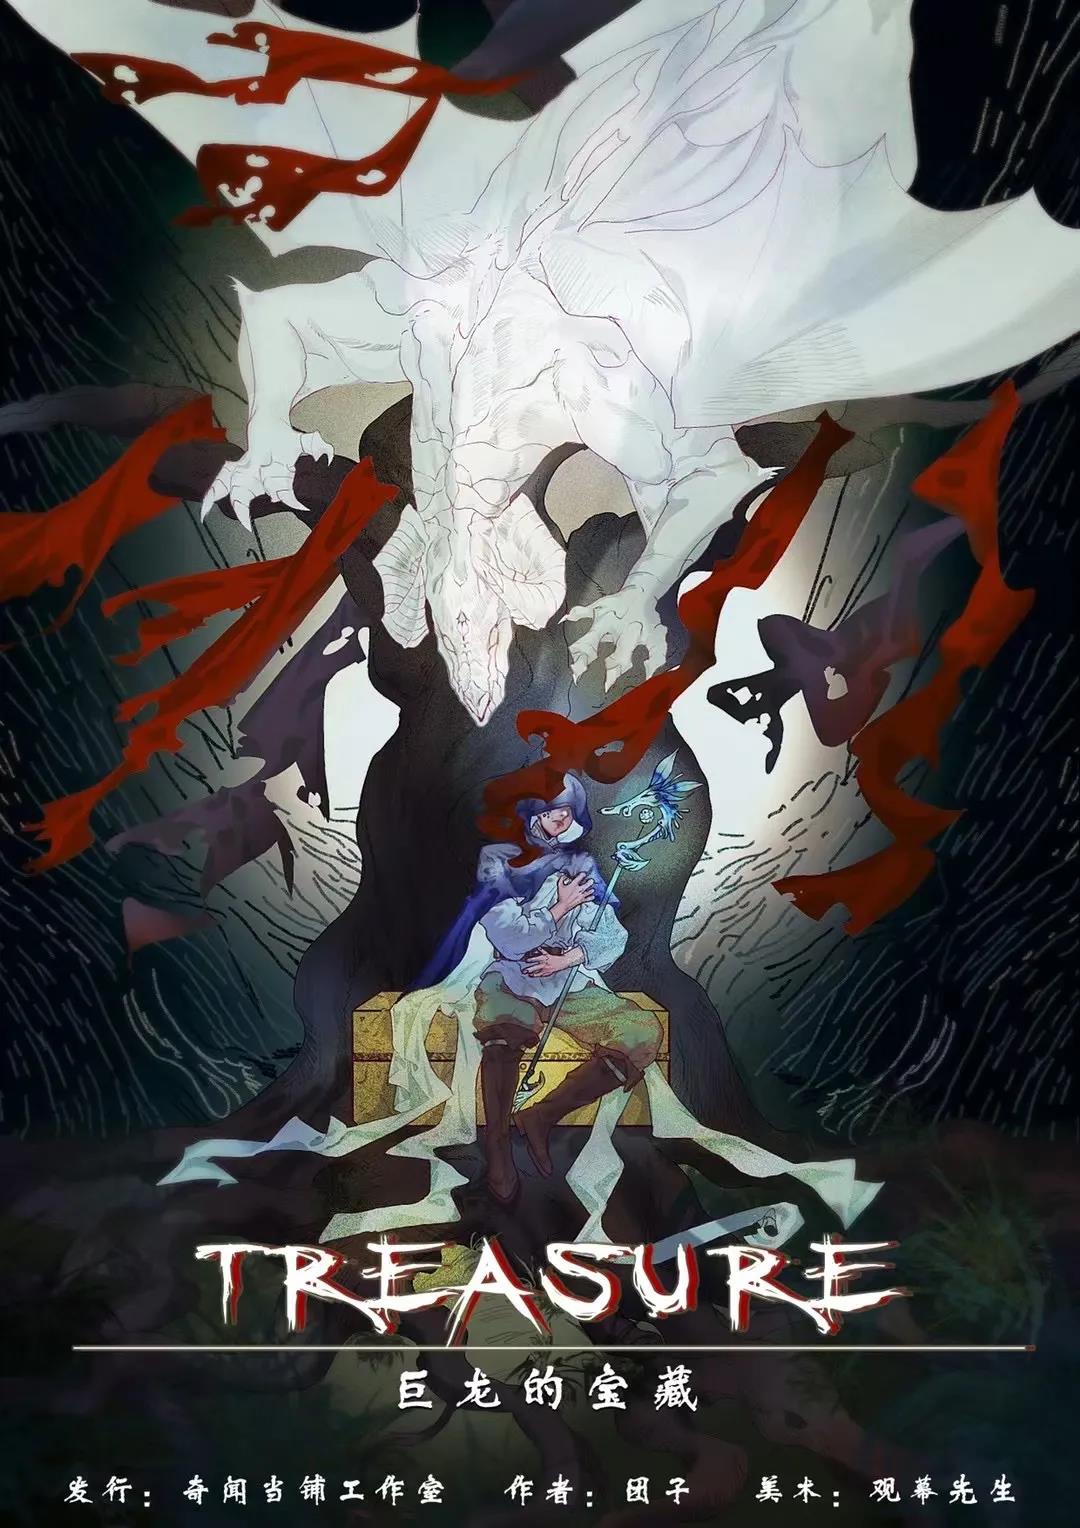 《Treasure-巨龙的宝藏》剧本杀凶手复盘疑点解惑测评+密码答案动机